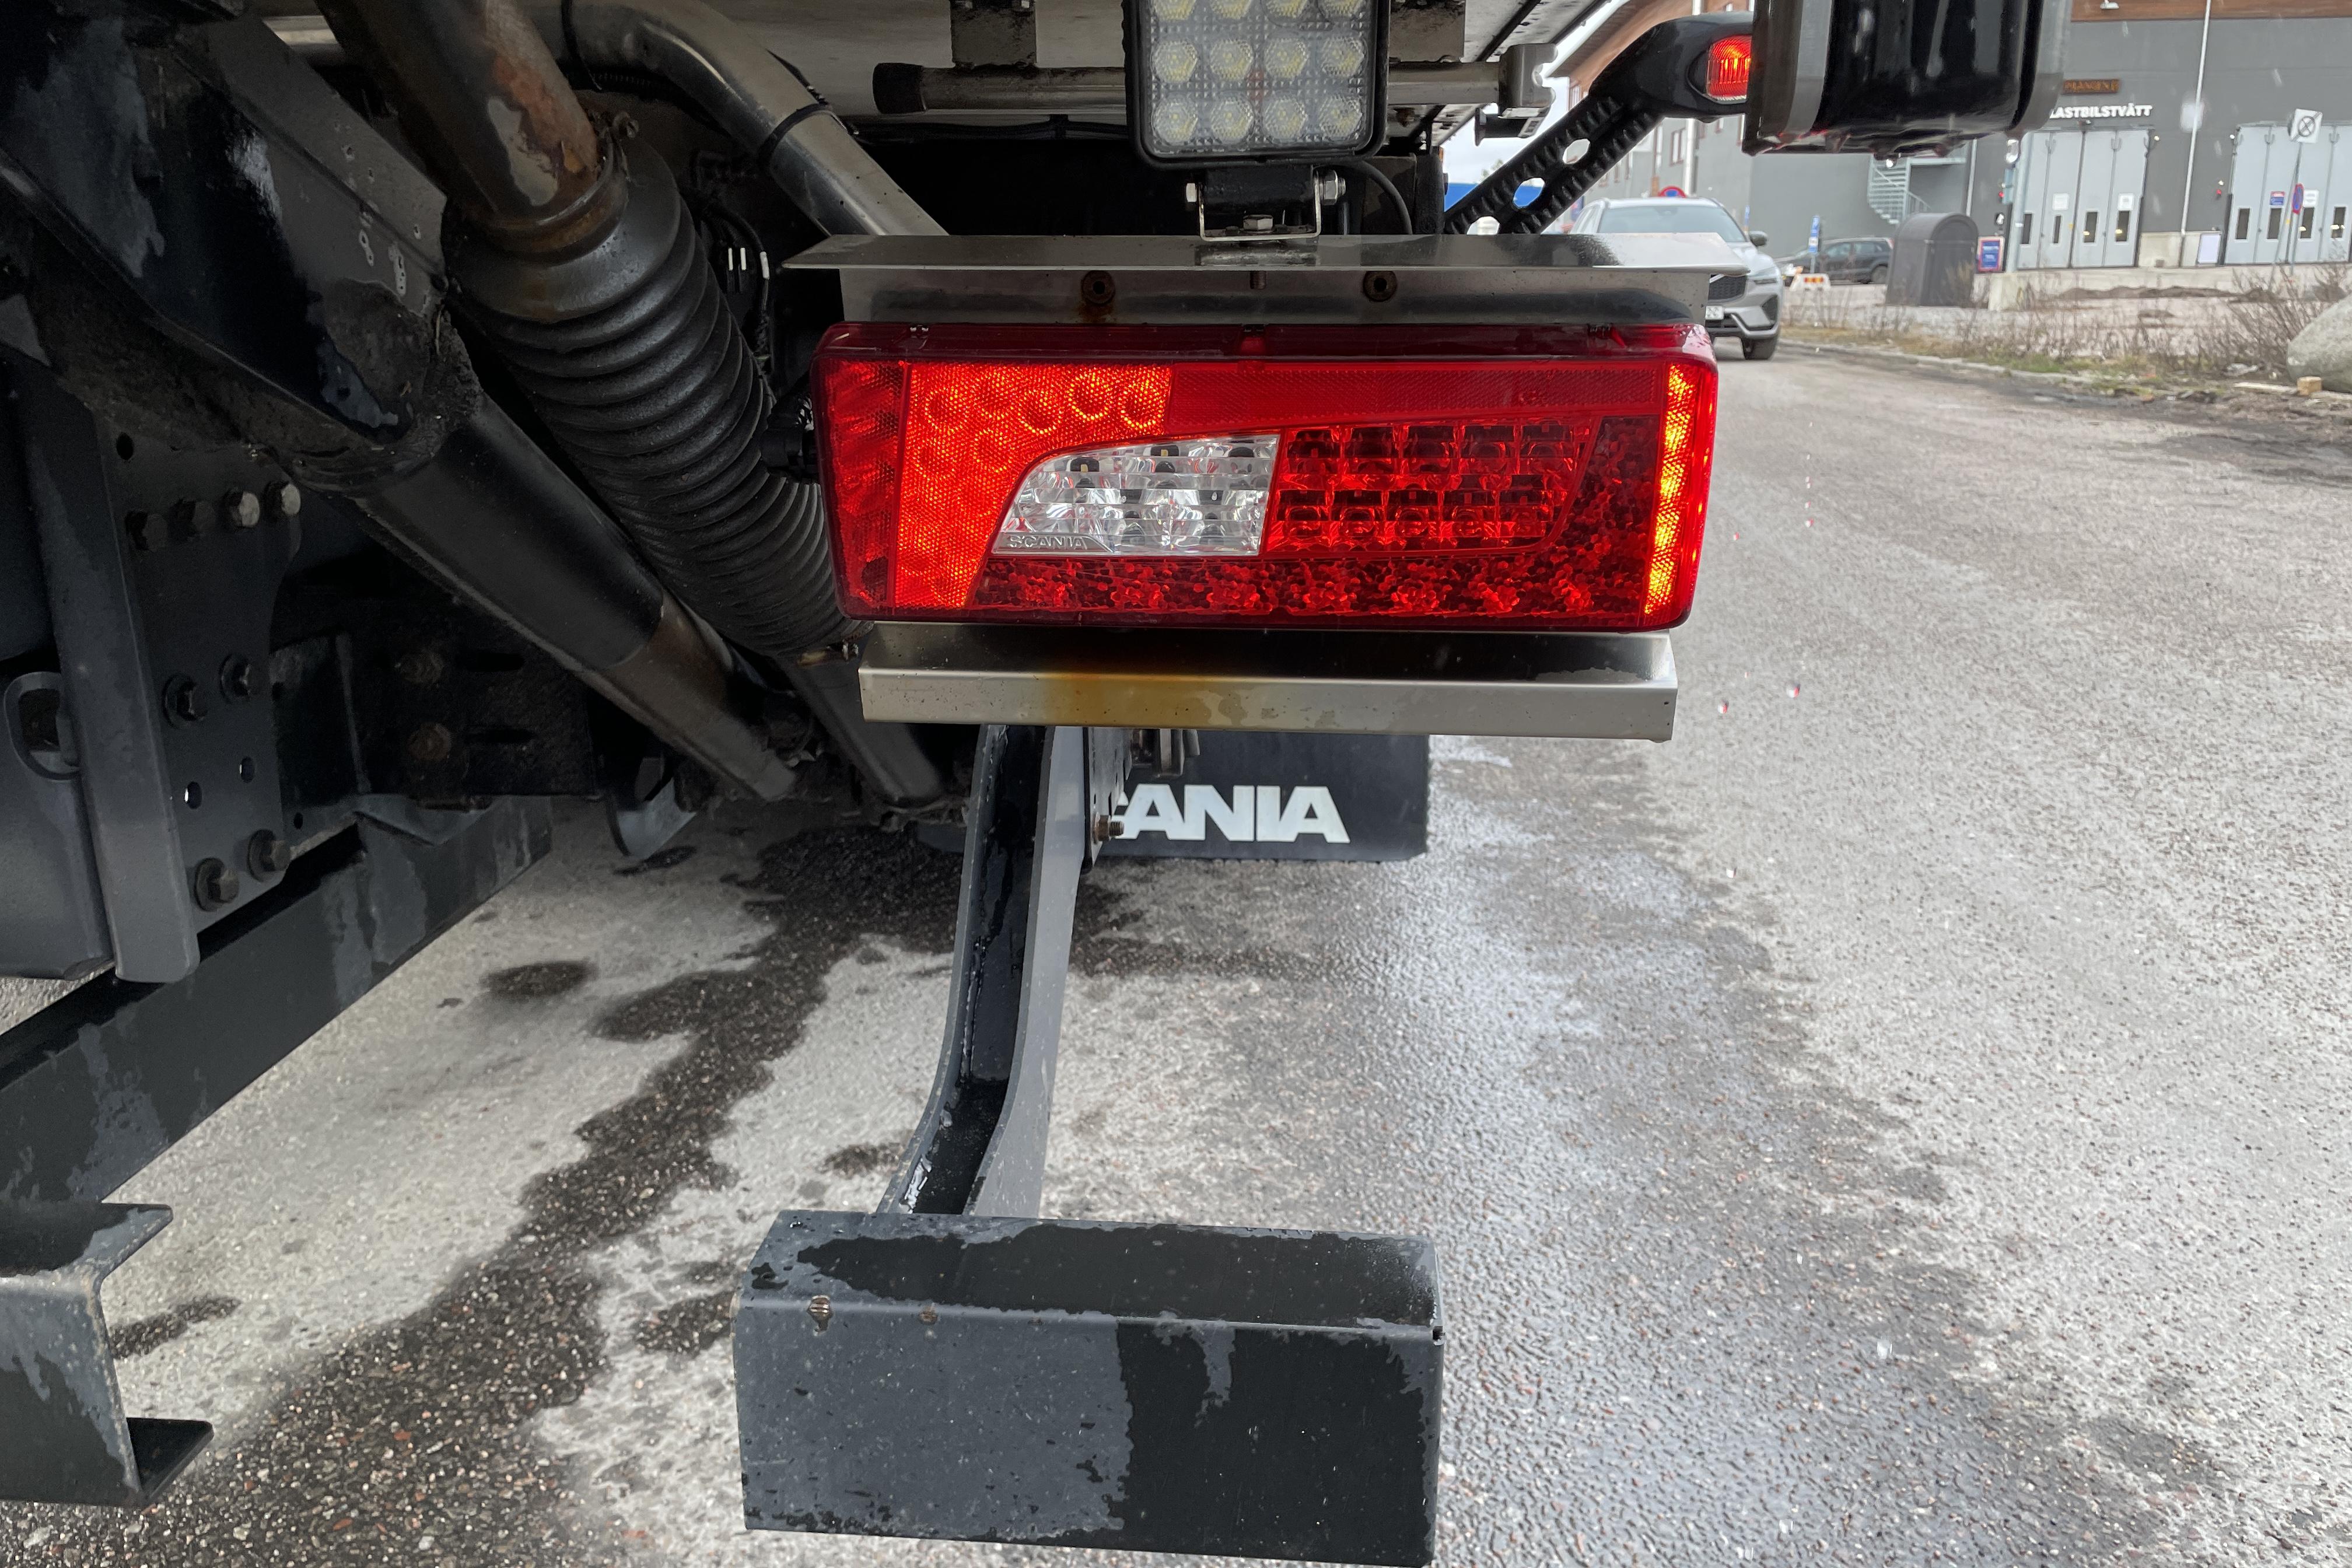 Scania S730B6X2*4NB - 476 482 km - Automat - blå - 2016